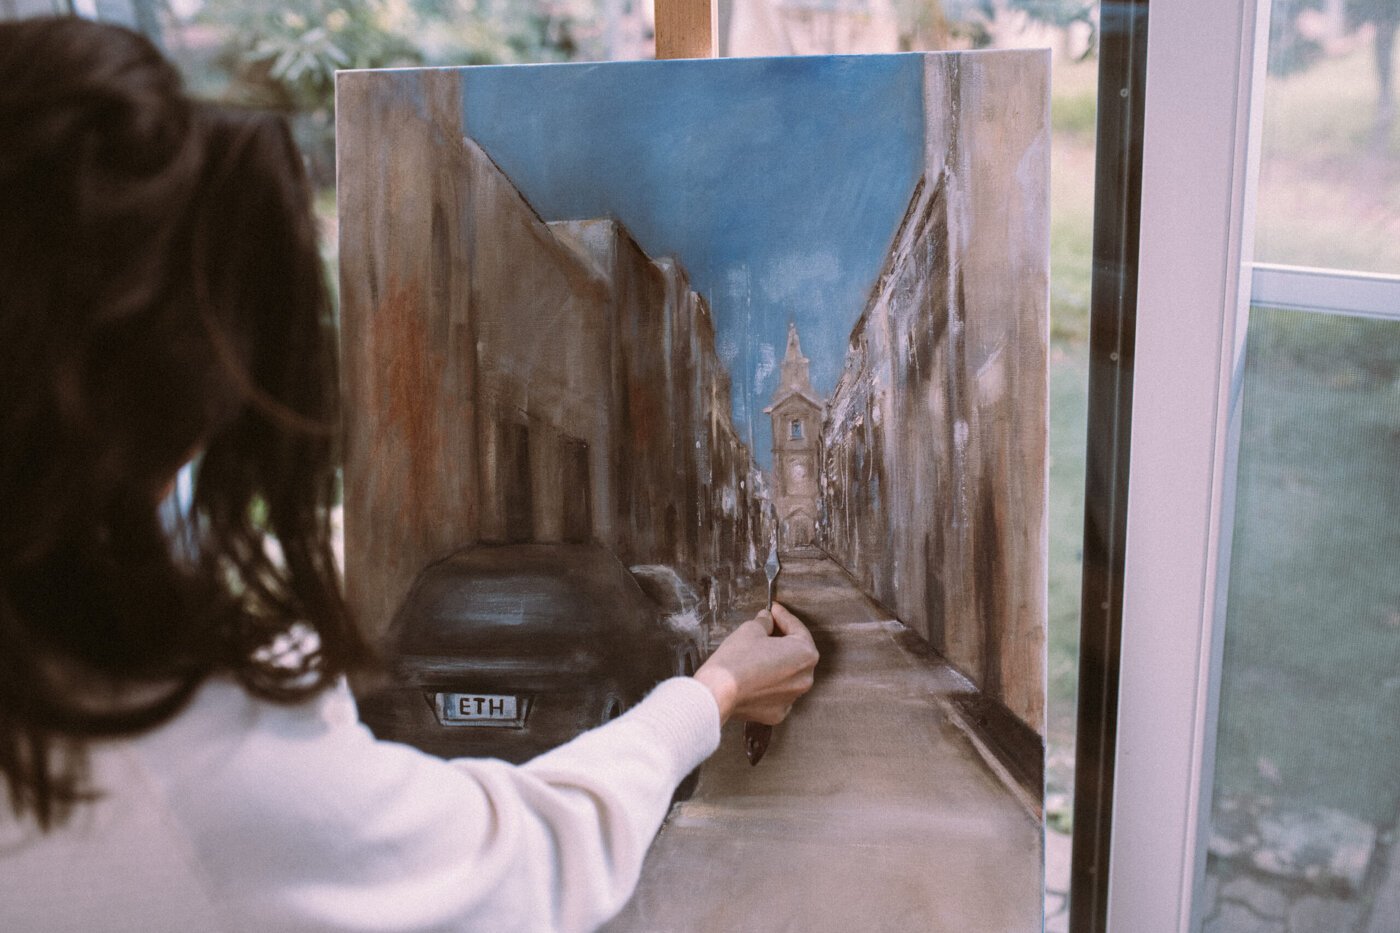 Escena callejera de mujer pintando en el estudio del artista.